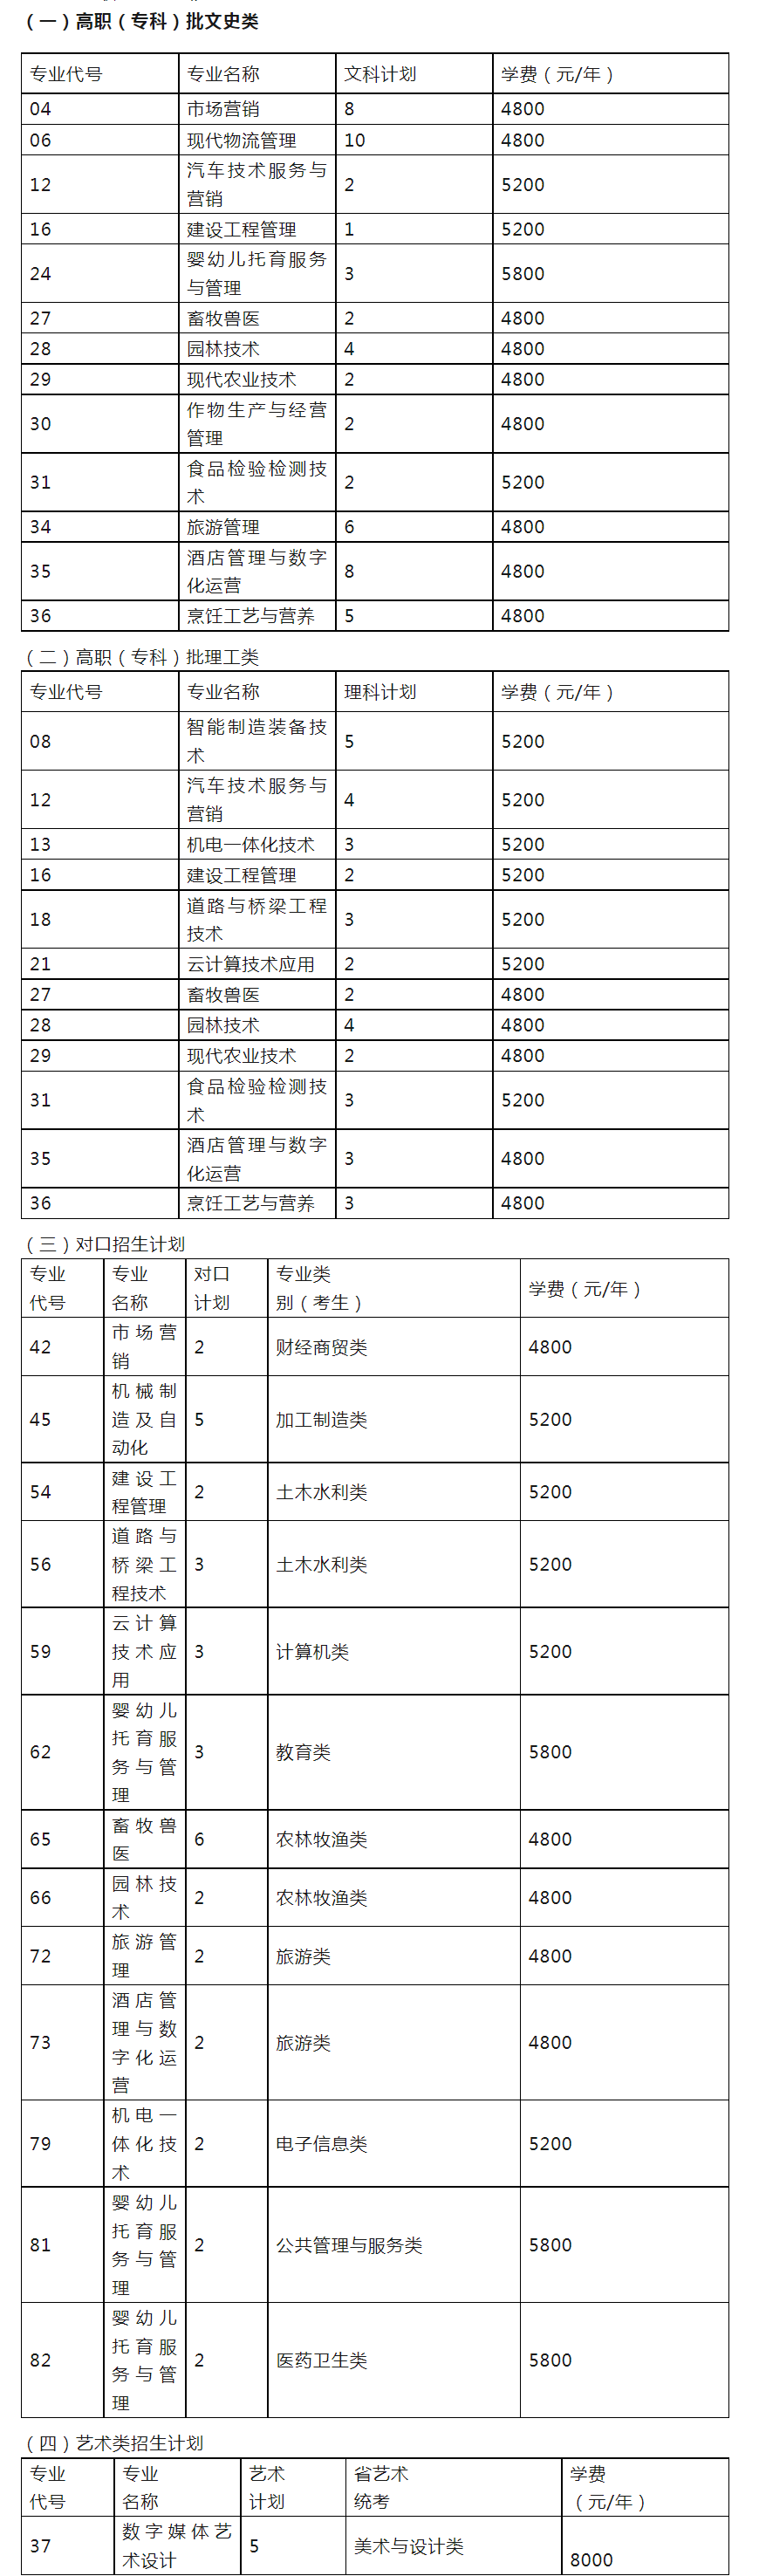 内江职业技术学院秋季补录公开征集志愿，9月22日-25日限时补录